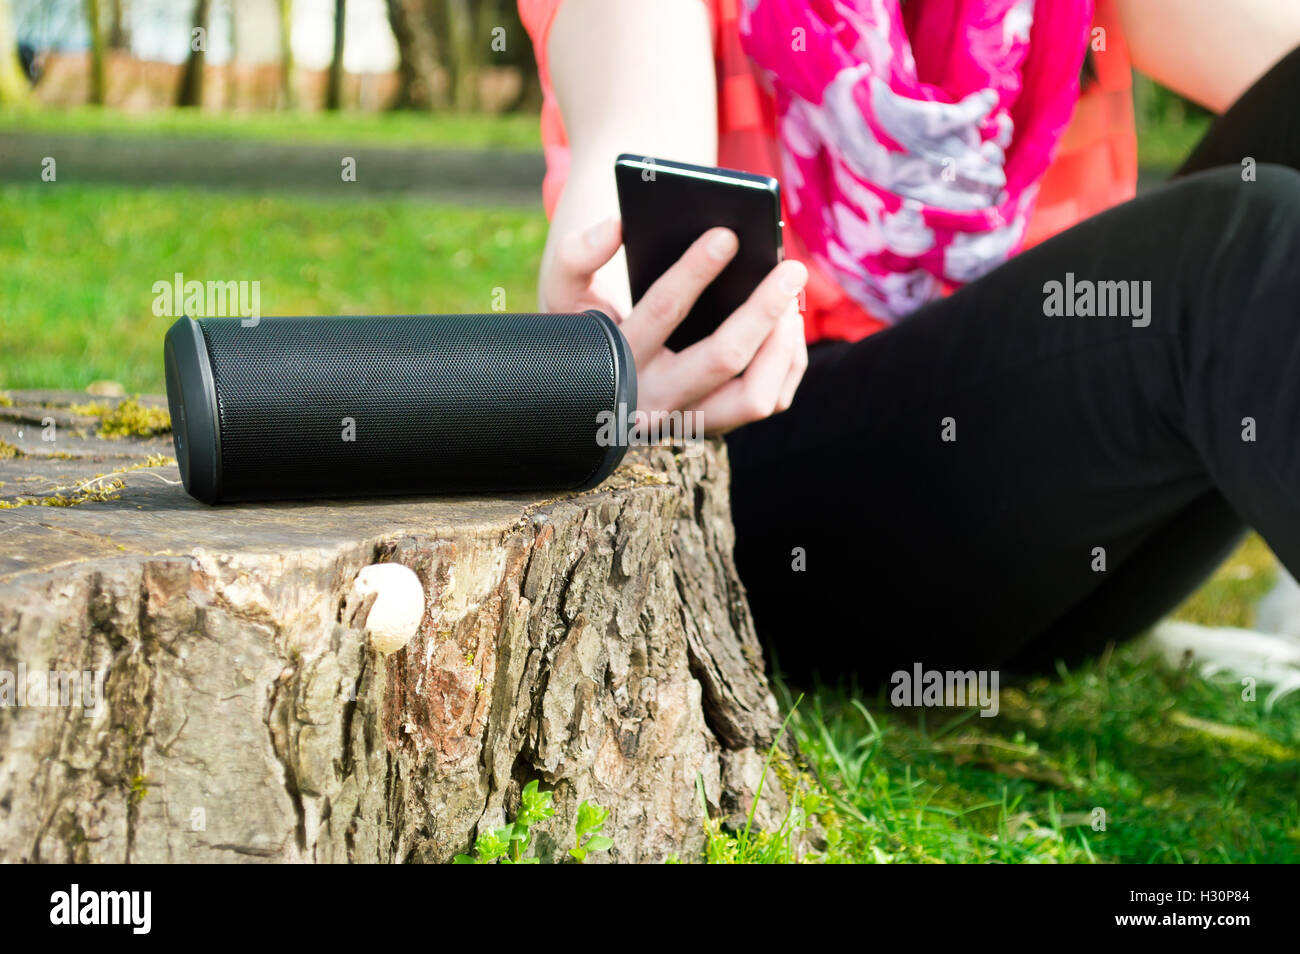 La donna si sta collegando il suo smartphone con altoparlante wireless mentre è all'aperto. Foto Stock